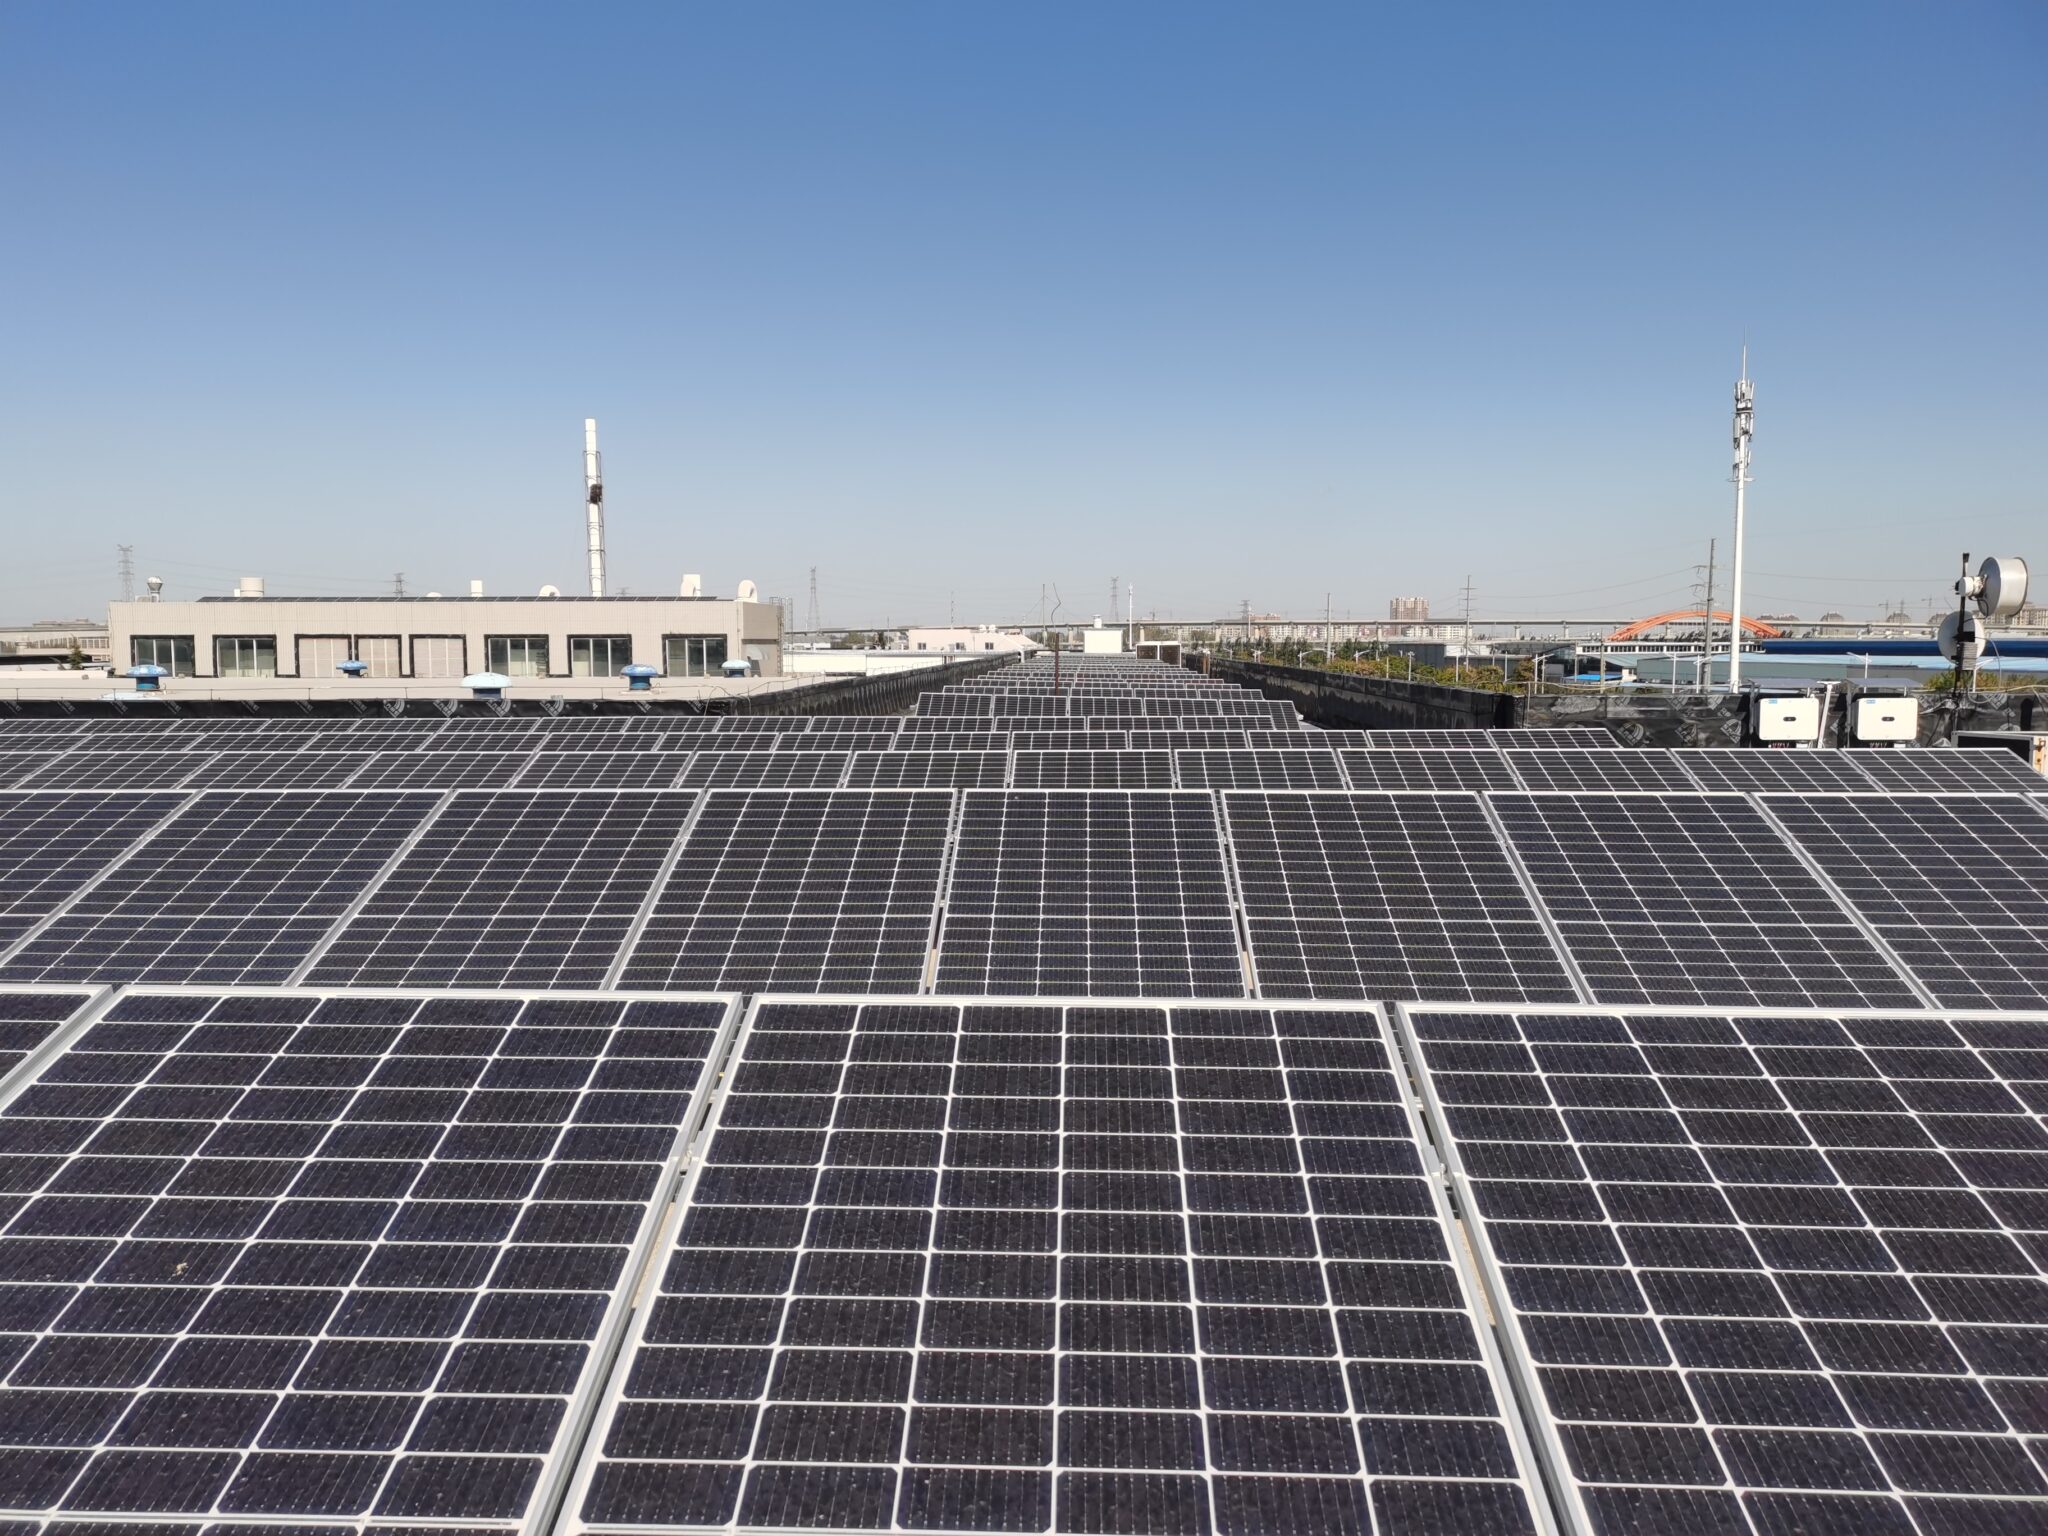 Solar panels at TE's Appliances Qingdao Site